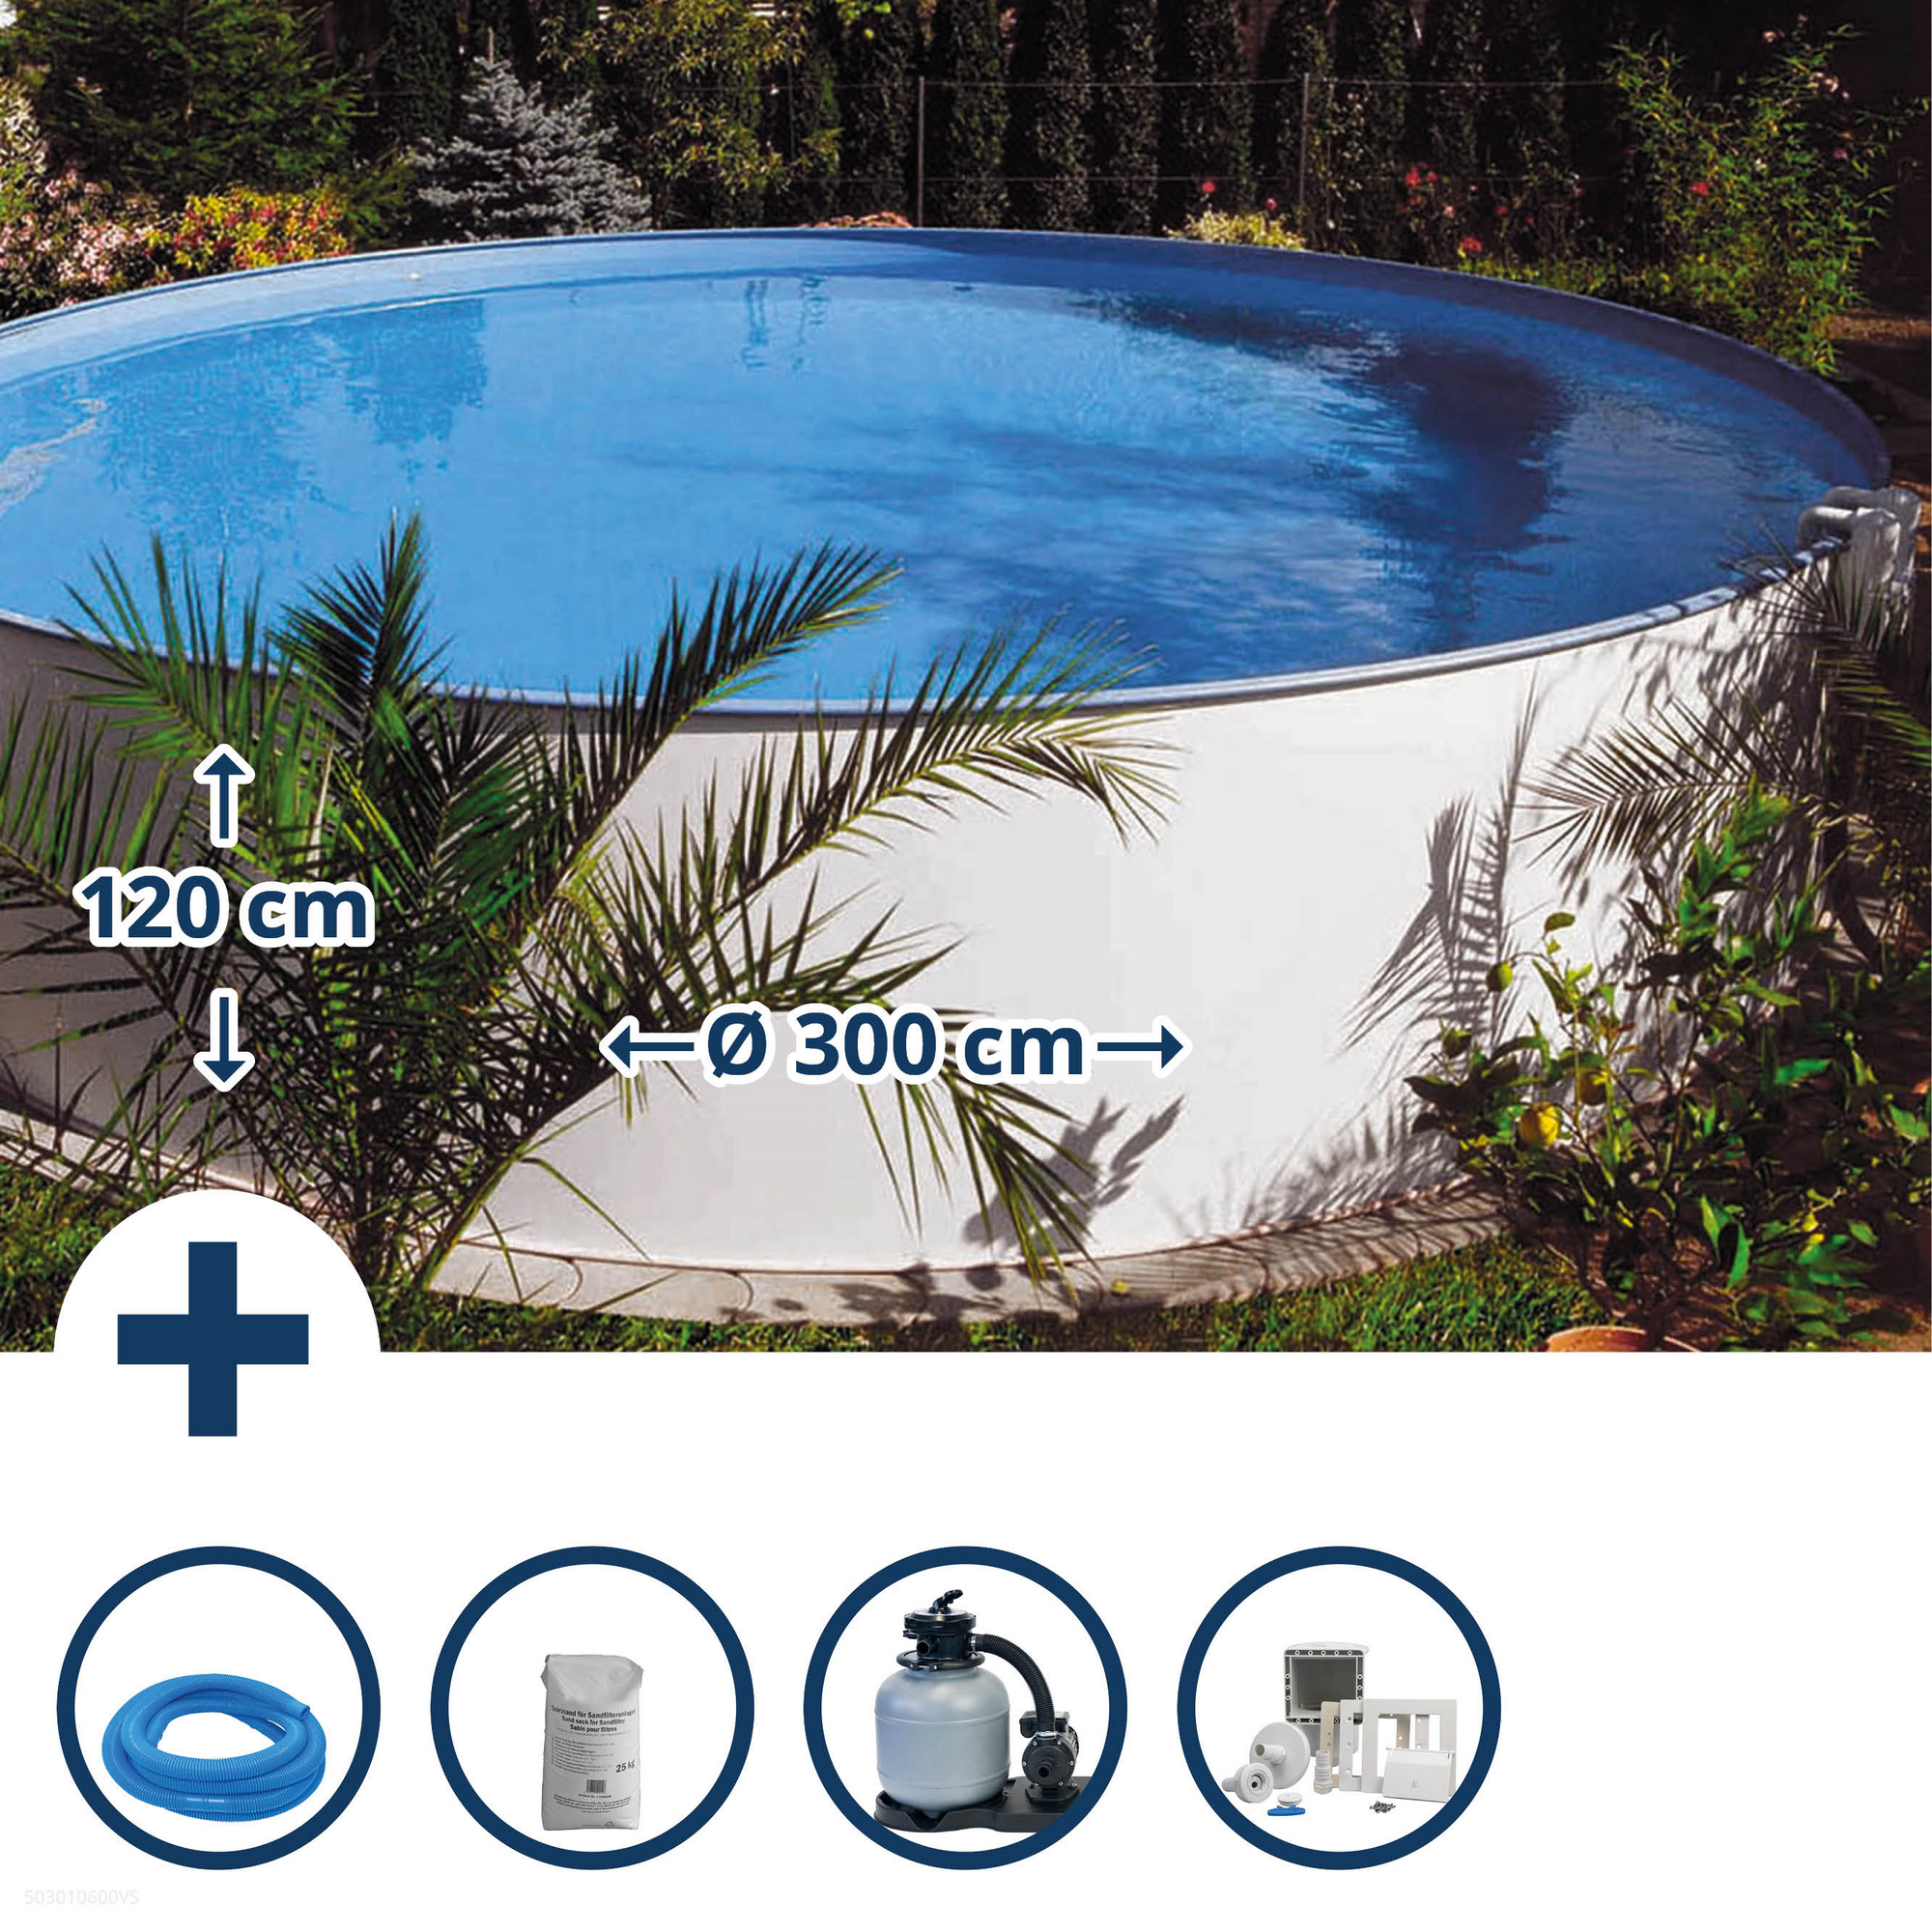 Aufstellpool-Set 'Exclusiv 2' weiß/blau Ø 300 x 120 cm + product picture